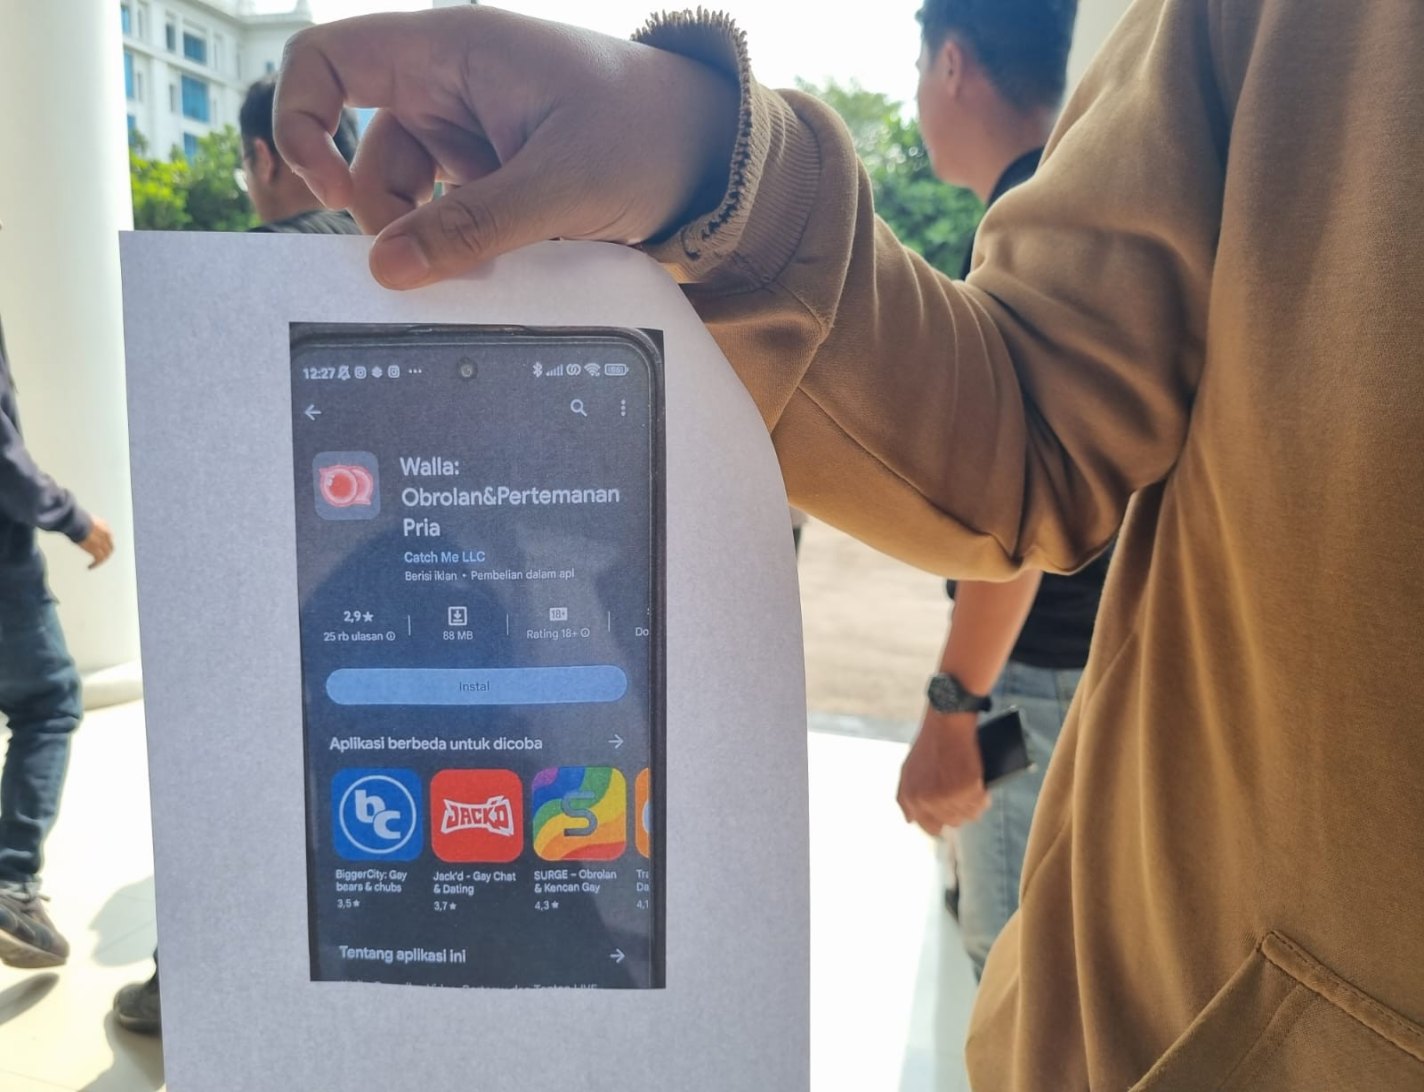 Polrestabes Bandung Minta Kominfo Blokir Aplikasi Walla - JPNN